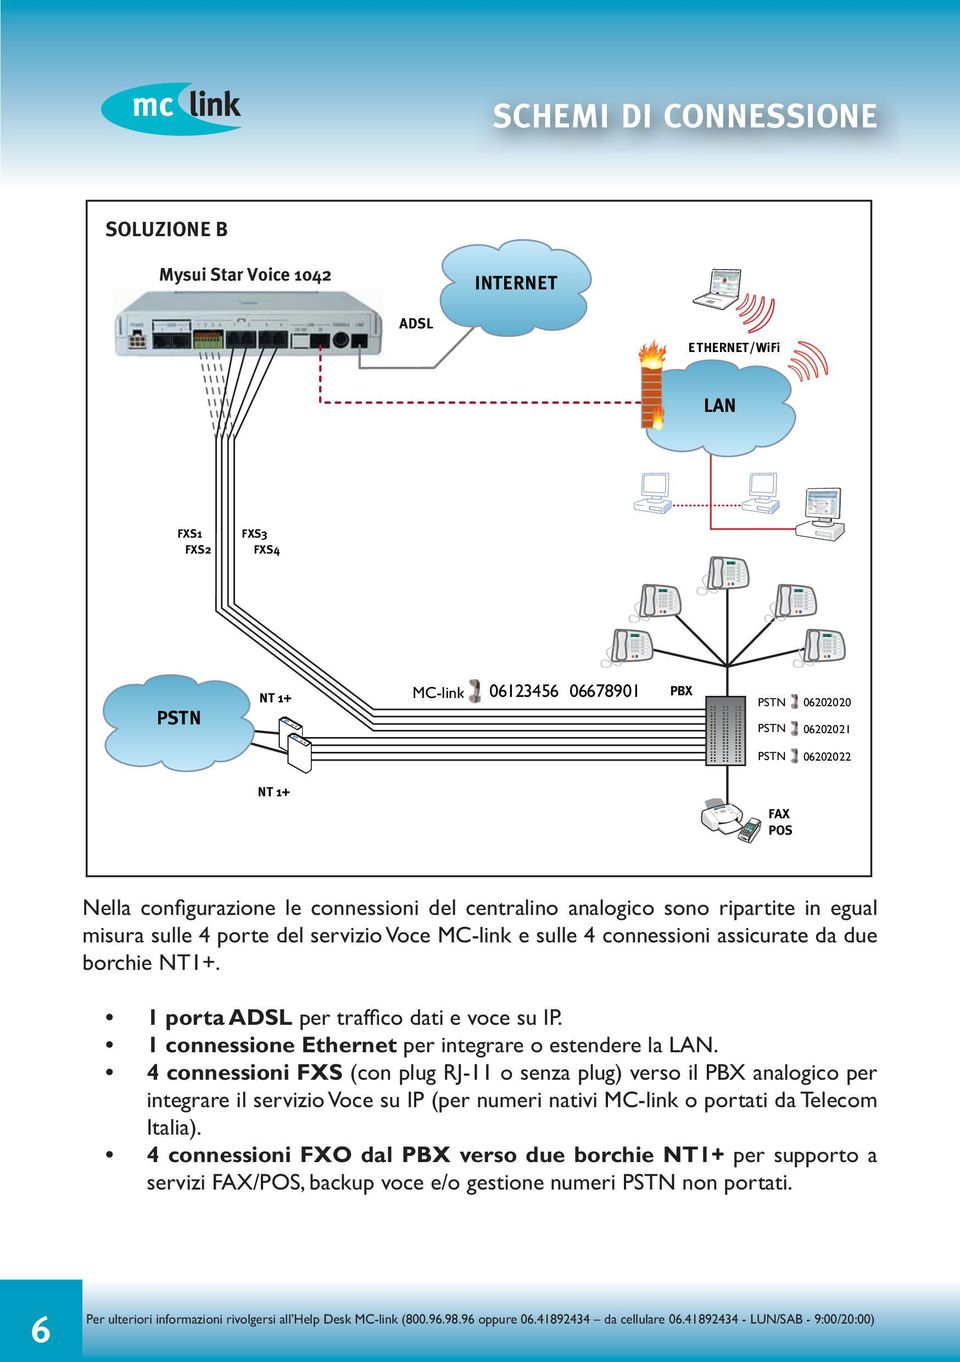 1 porta ADSL per traffico dati e voce su IP. 1 connessione Ethernet per integrare o estendere la LAN.